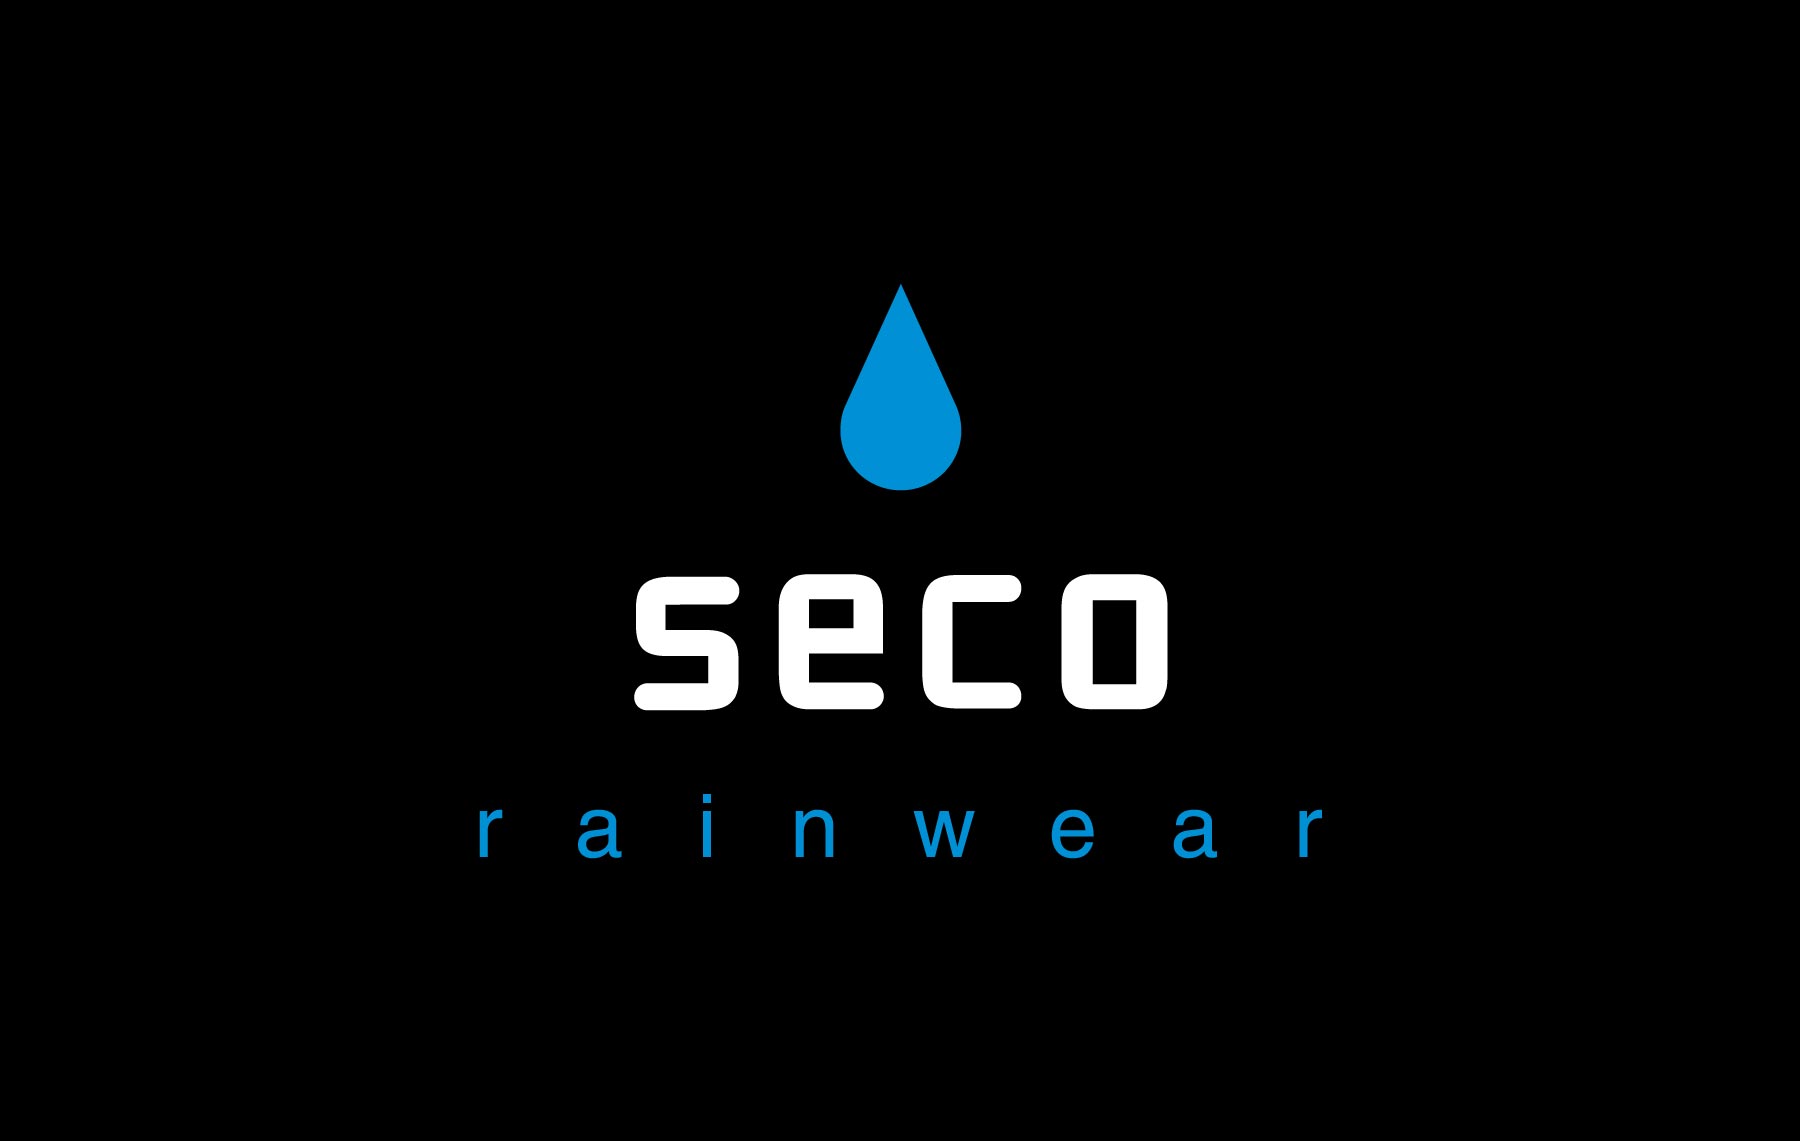 Seco Rainwear